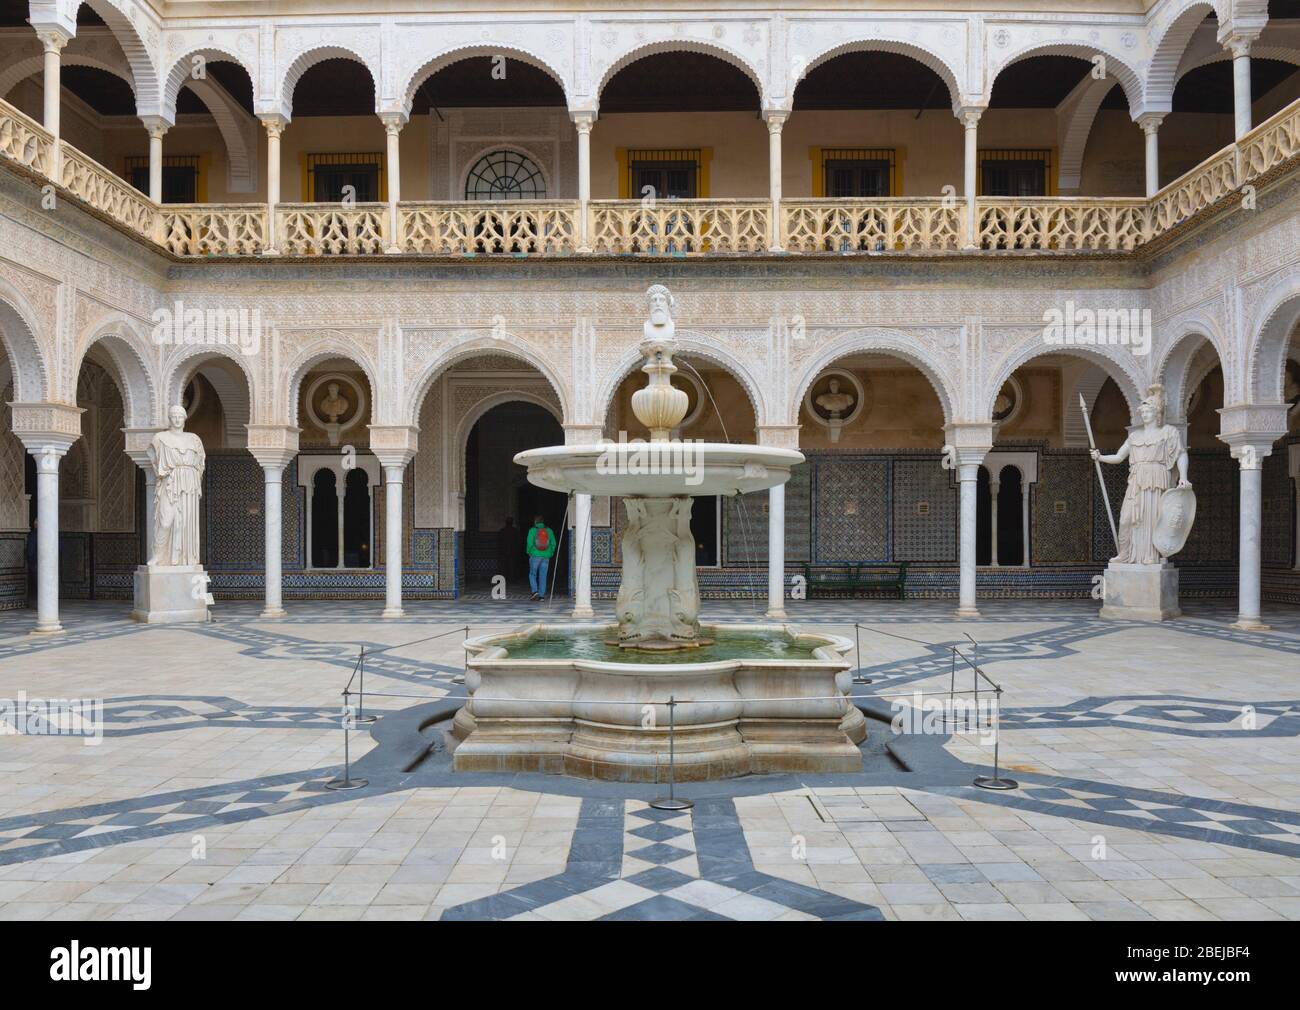 Il patio principale di Casa de Pilatos, o Casa del Pilato, Siviglia, provincia di Siviglia, Andalusia, Spagna meridionale. La fontana è conosciuta come la Founta Janus Foto Stock